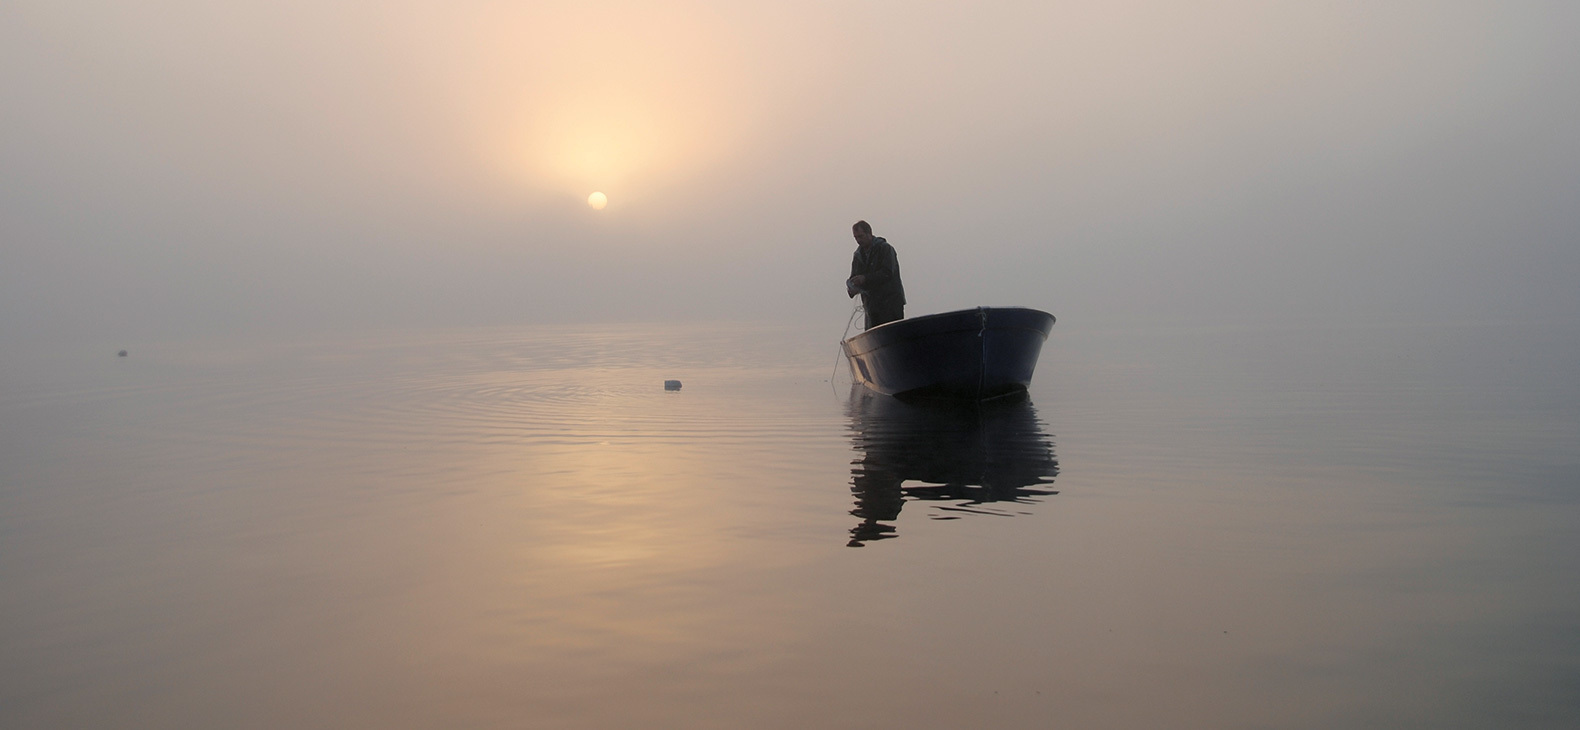 Mann in einem Boot auf einem See in der Morgendämmerung